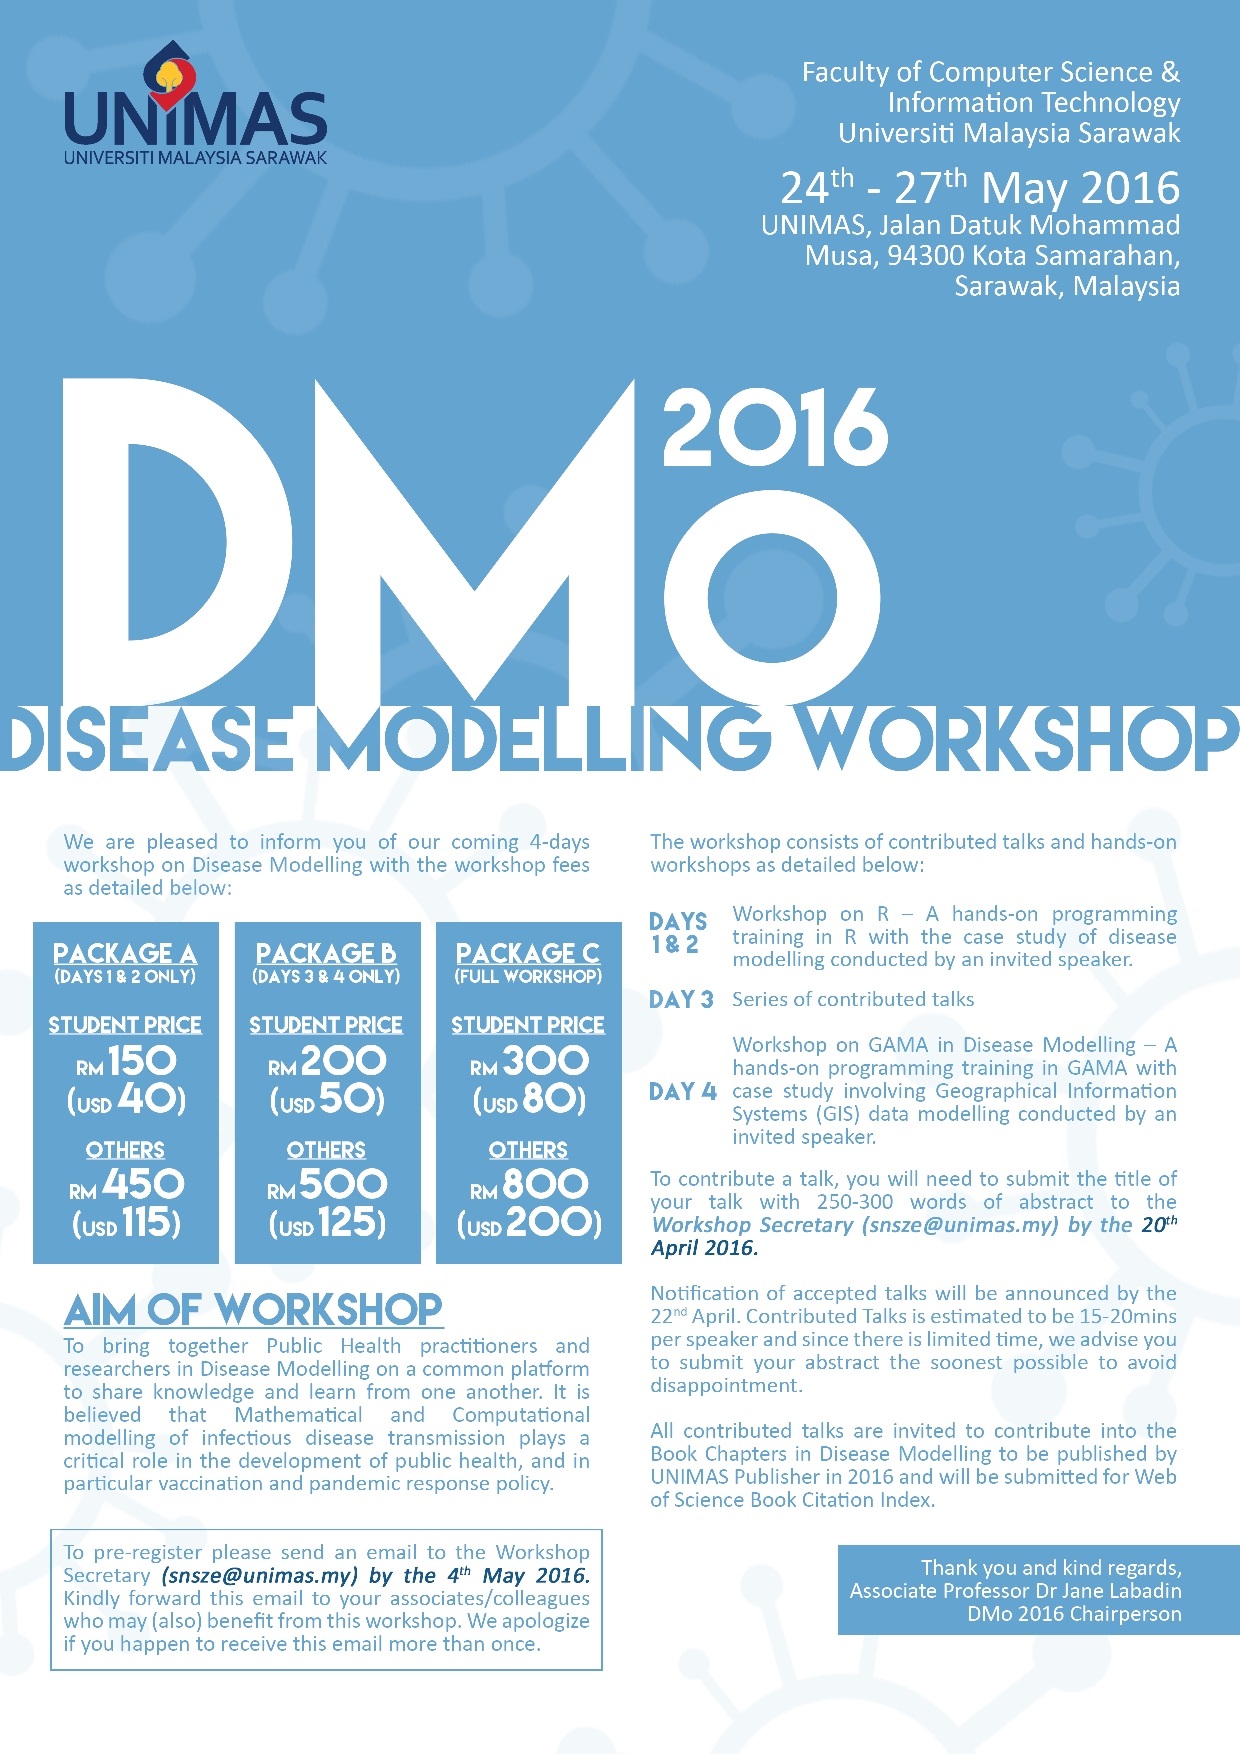 Disease Modeling Workshop 2016